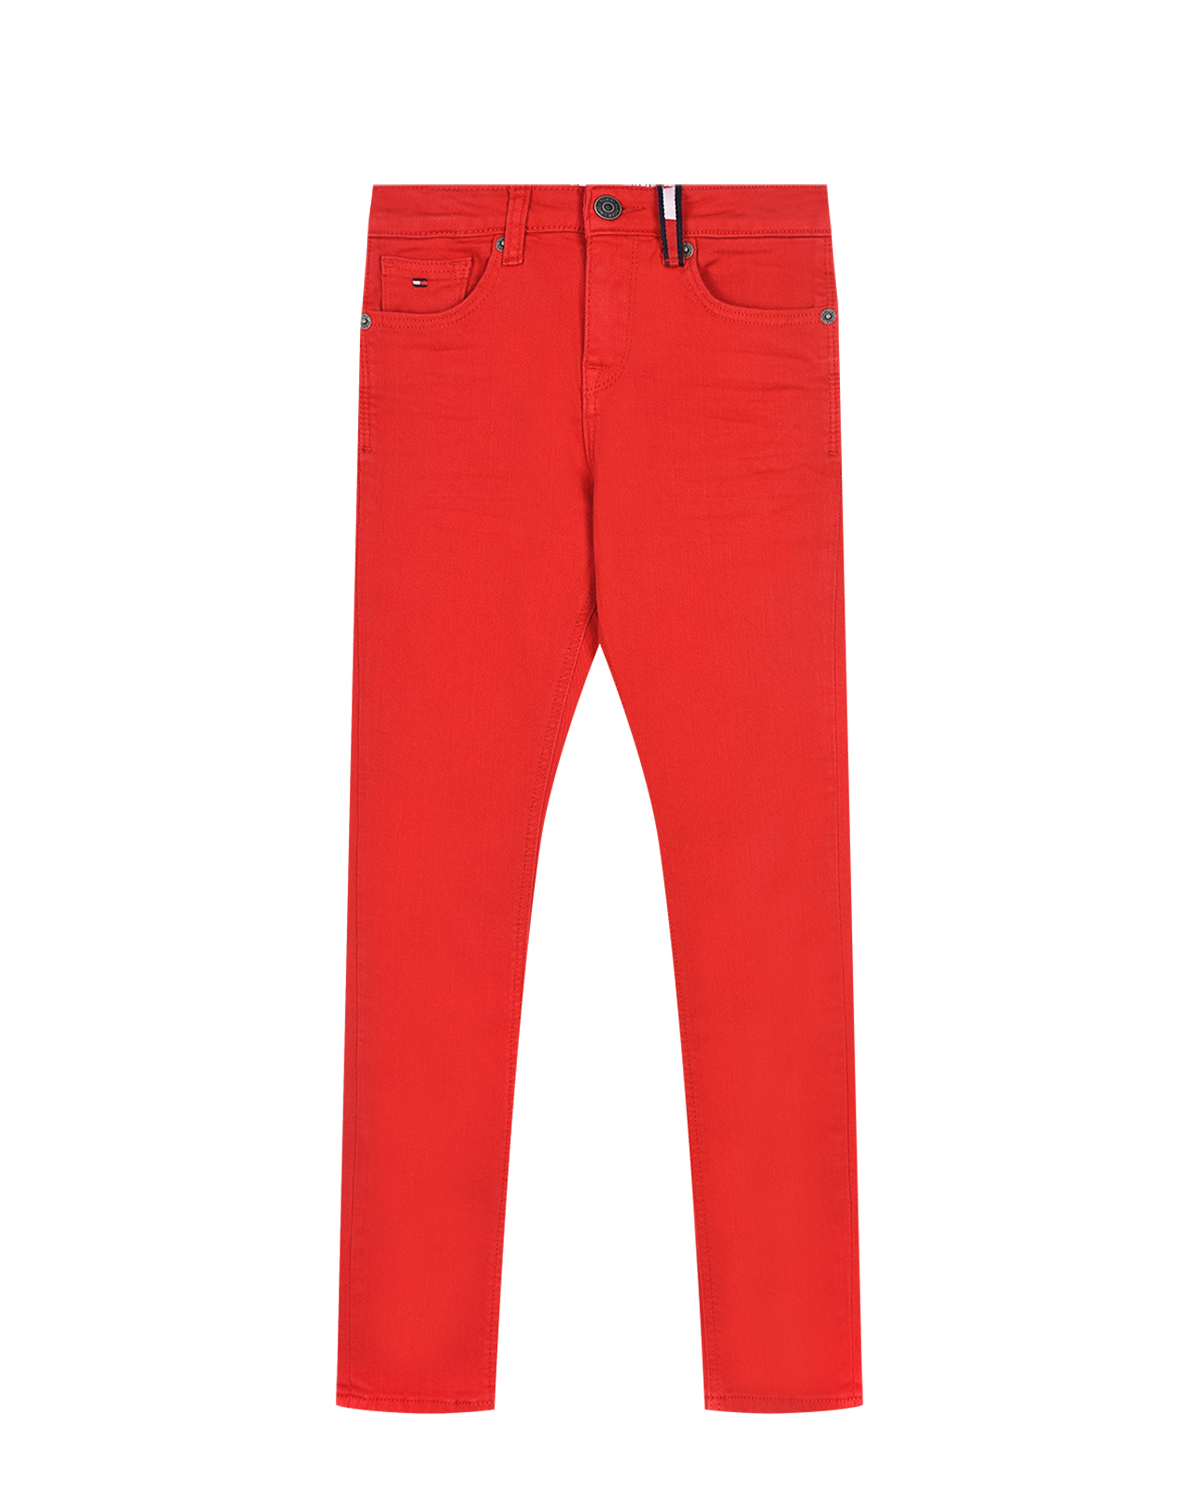 Красные джинсы skinny fit Tommy Hilfiger детские, размер 176, цвет красный - фото 1